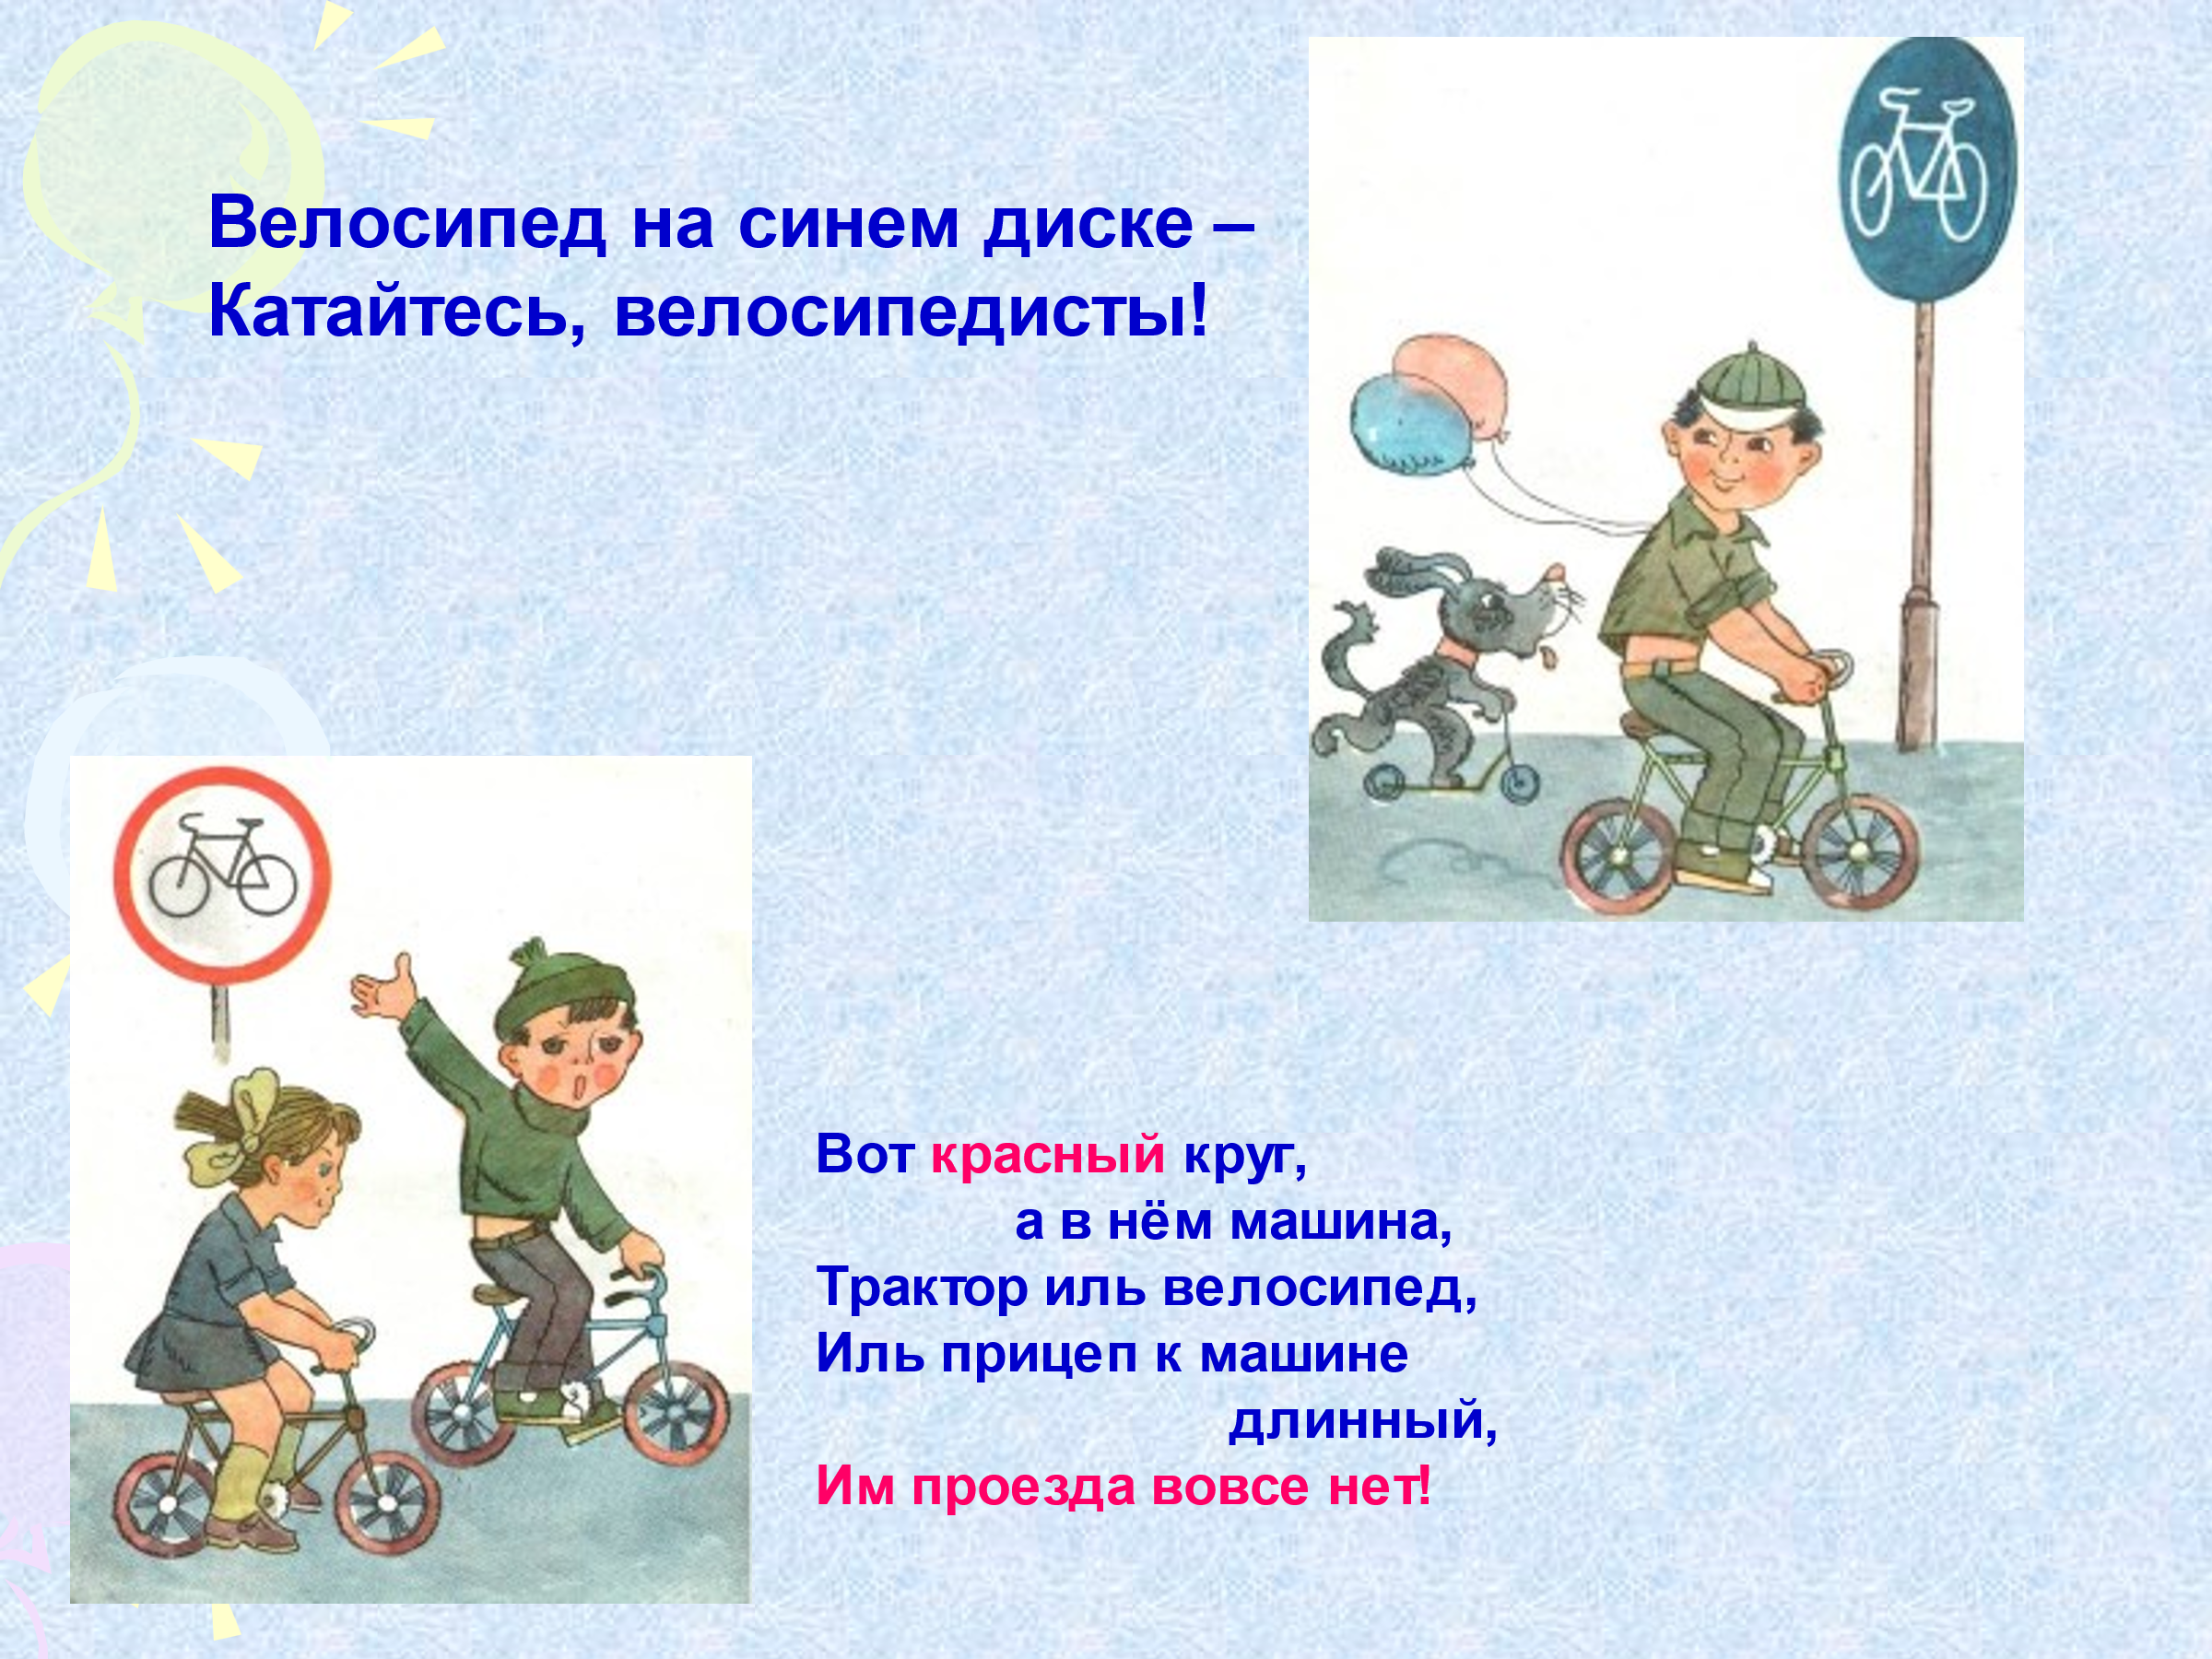 Где нельзя кататься. Разрешение ездить на велосипеде. Где нельзя кататься на велосипеде. Где можно кататься на велосипеде окружающий мир. Доклад где можно кататься на велосипеде.